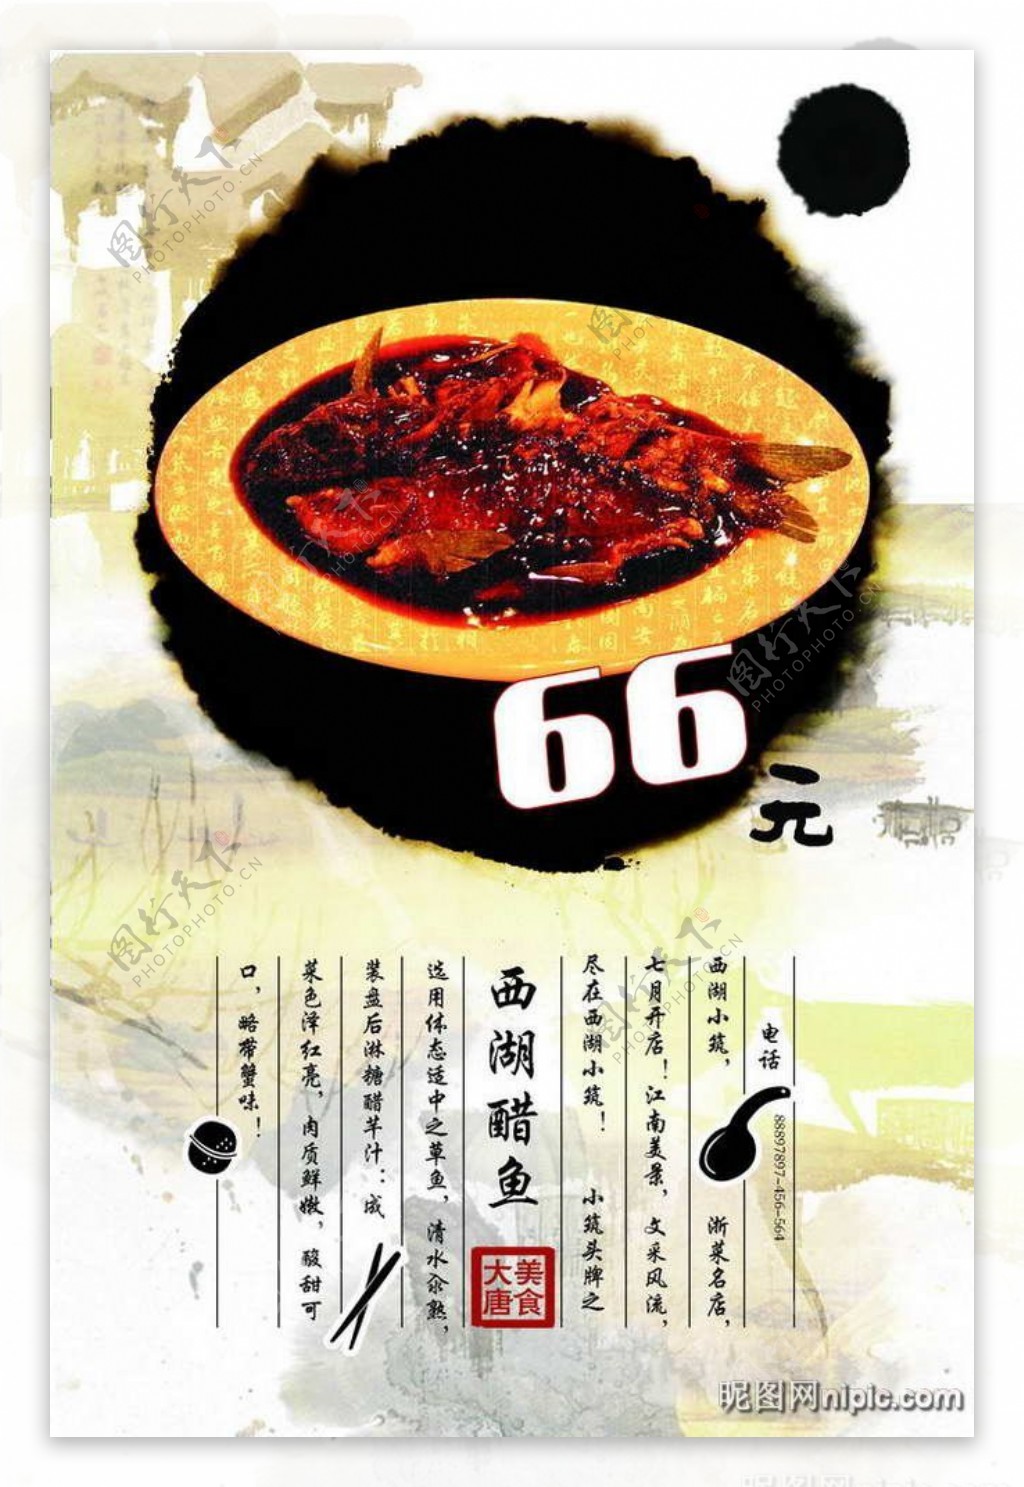 浙菜餐馆精品菜肴推介招贴海报设计PSD模板图片